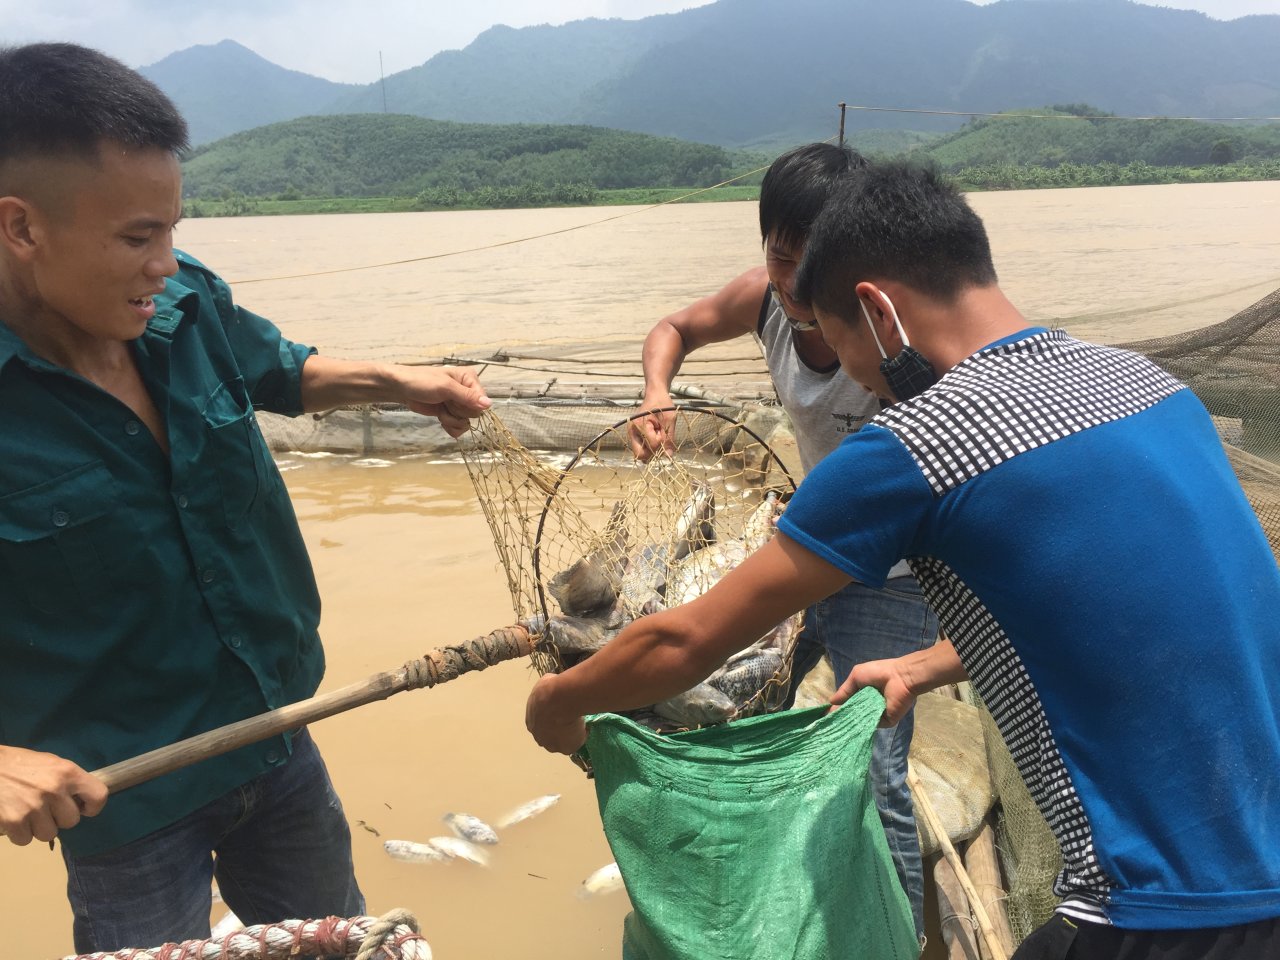 Hydropower plant water discharge kills fish en masse in northern Vietnam